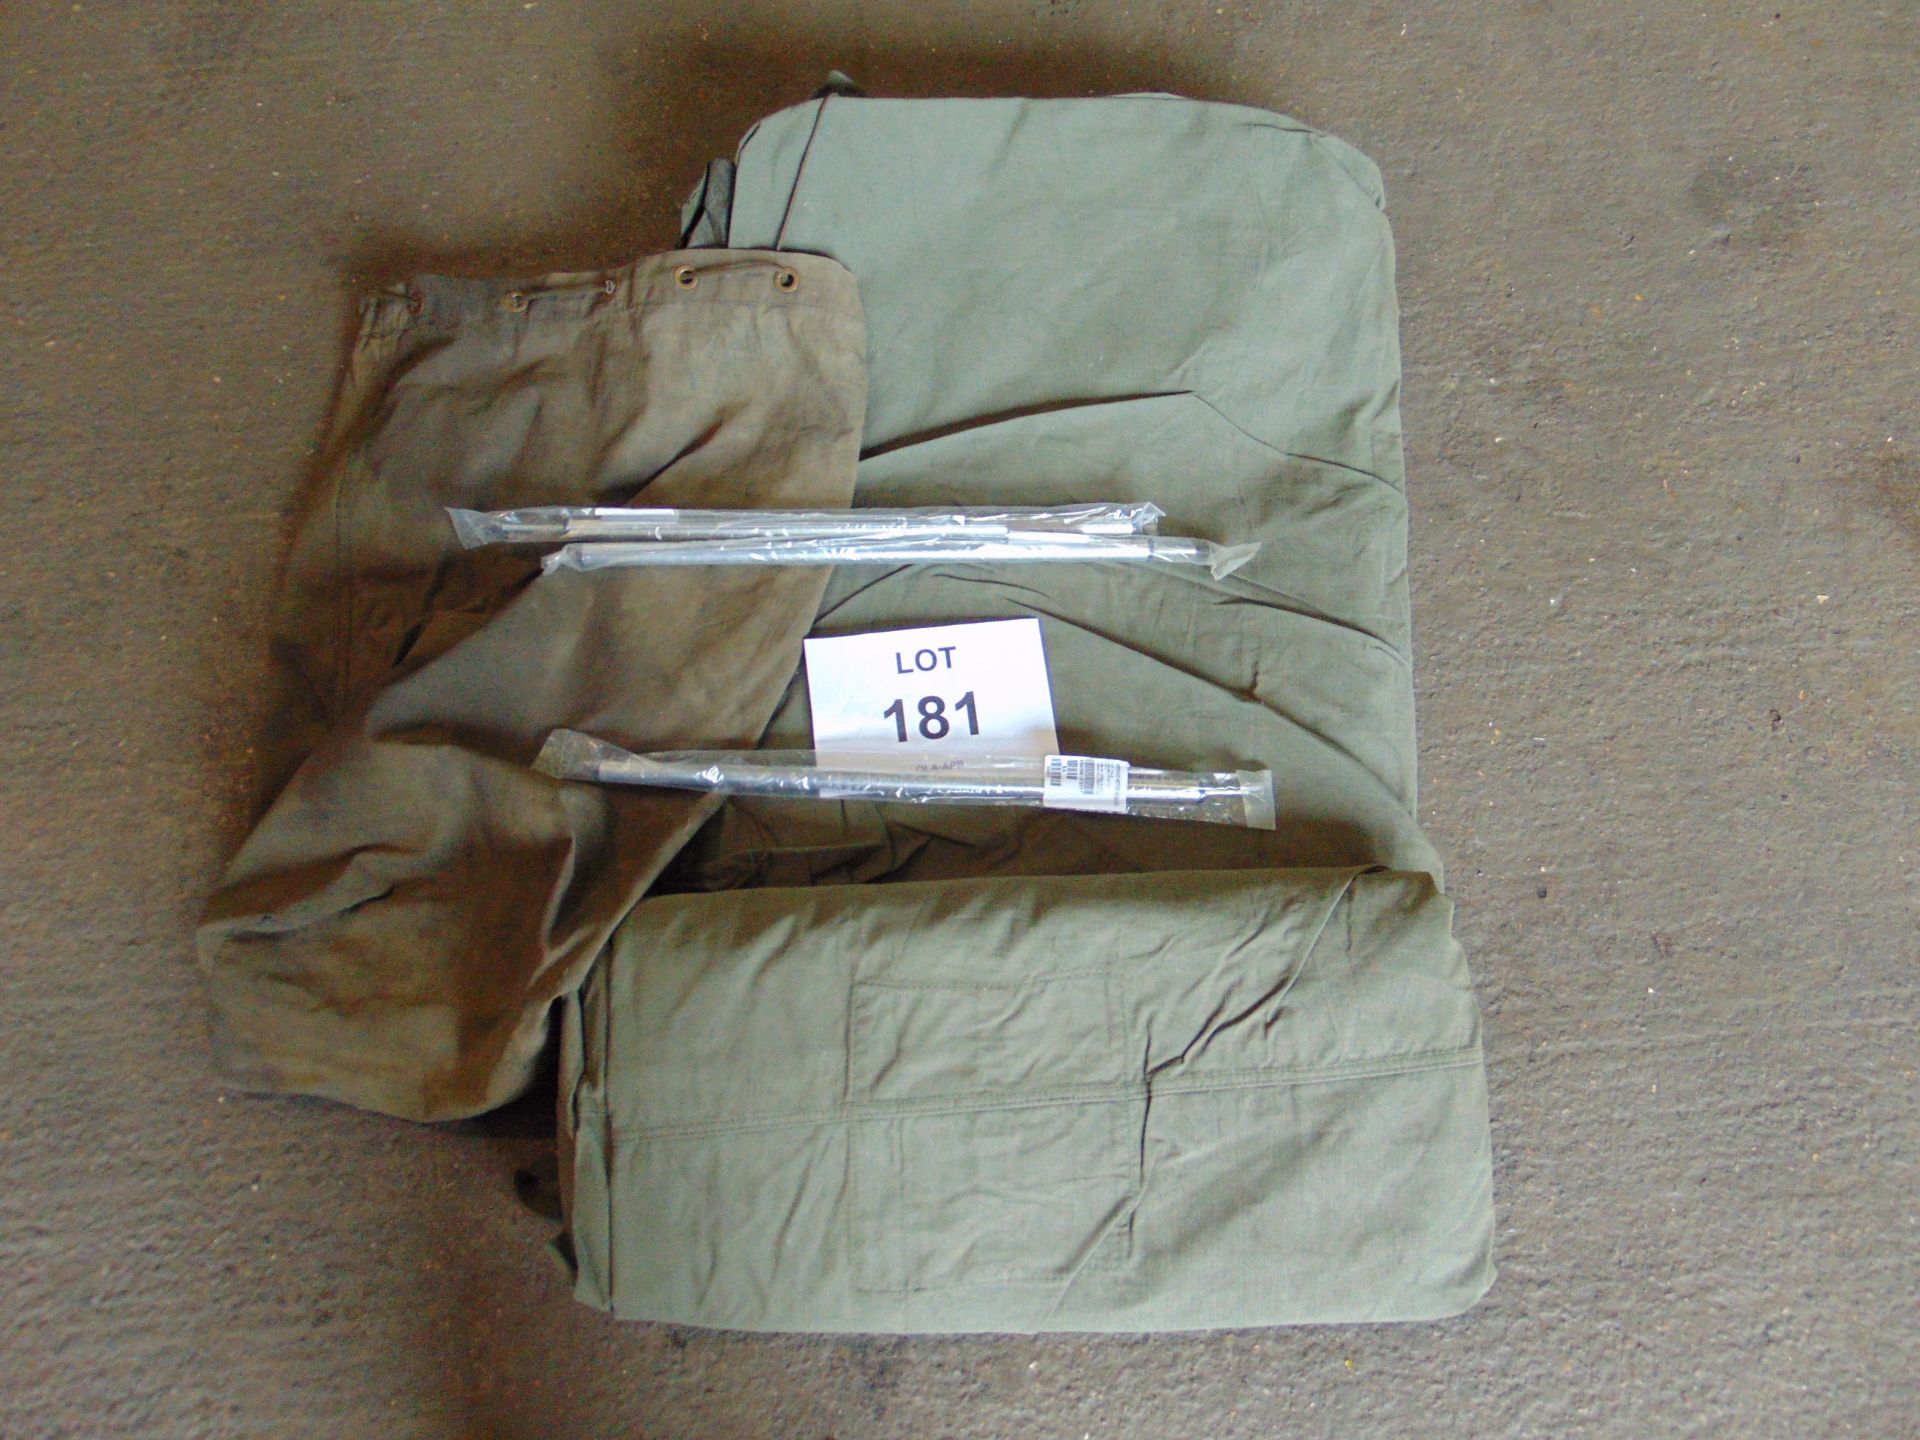 1 x CVRT Side Tent c/w/ Poles in Bag